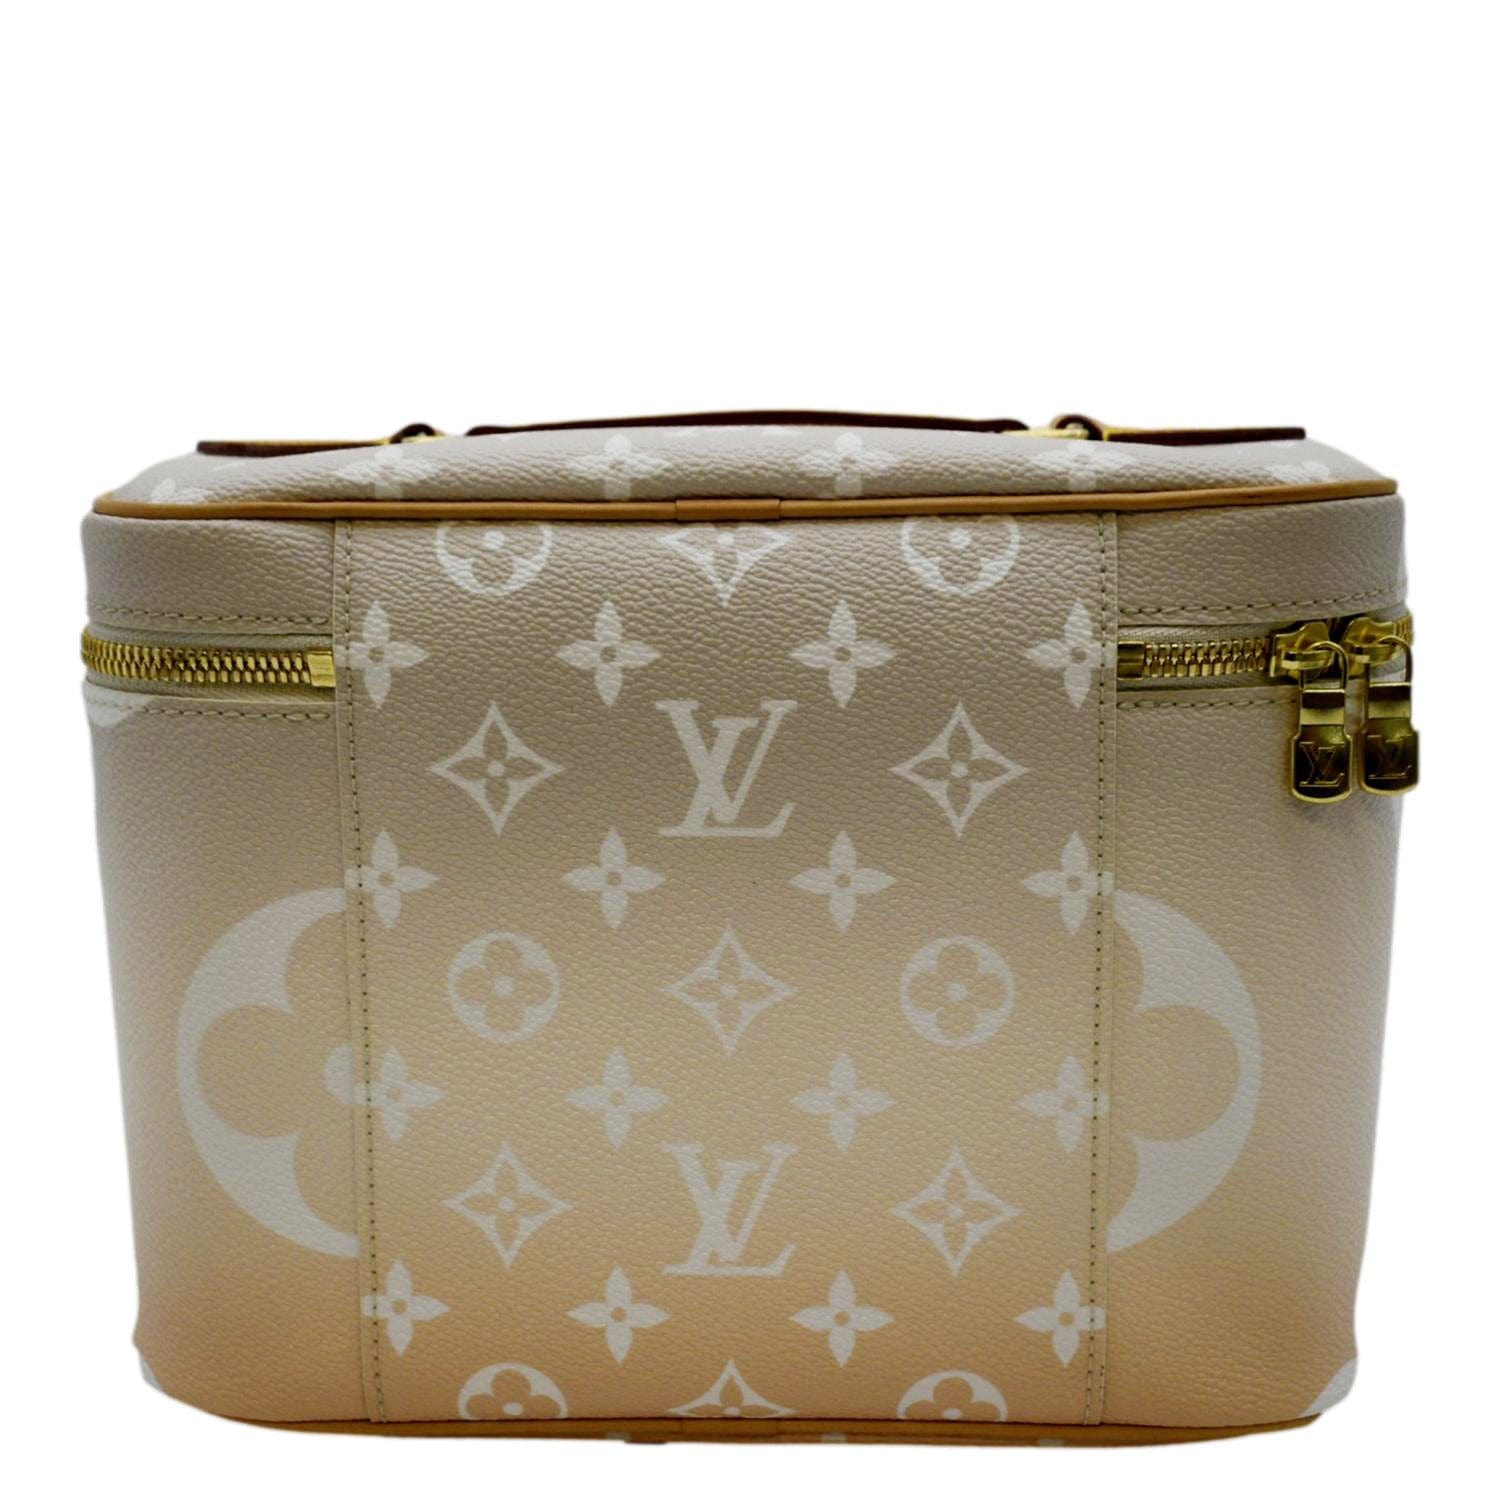 Louis Vuitton Monogram Nice Vanity Case - Brown Cosmetic Bags